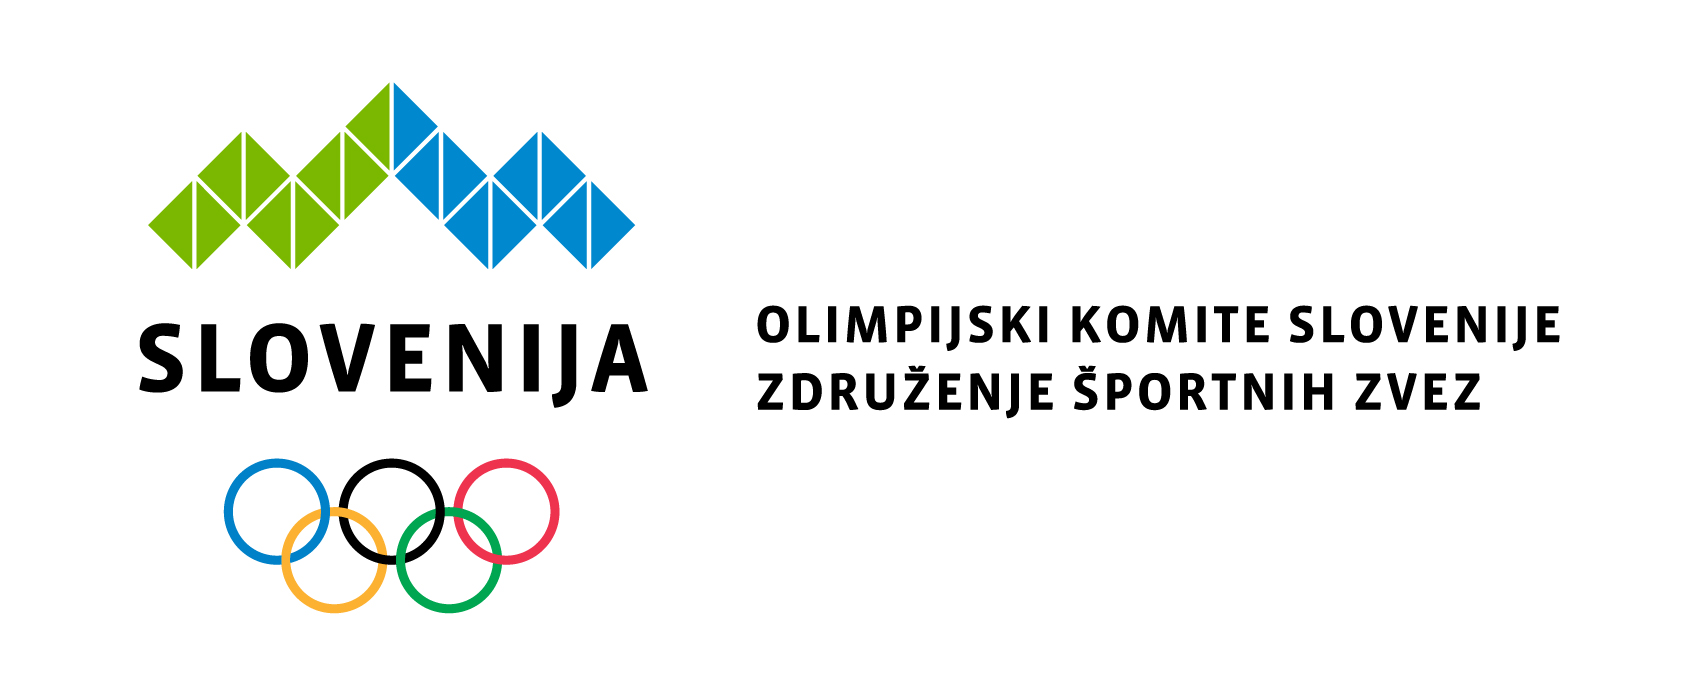 Olimpijski komite Slovenije z novo pobudo slovenskemu športu in javnosti